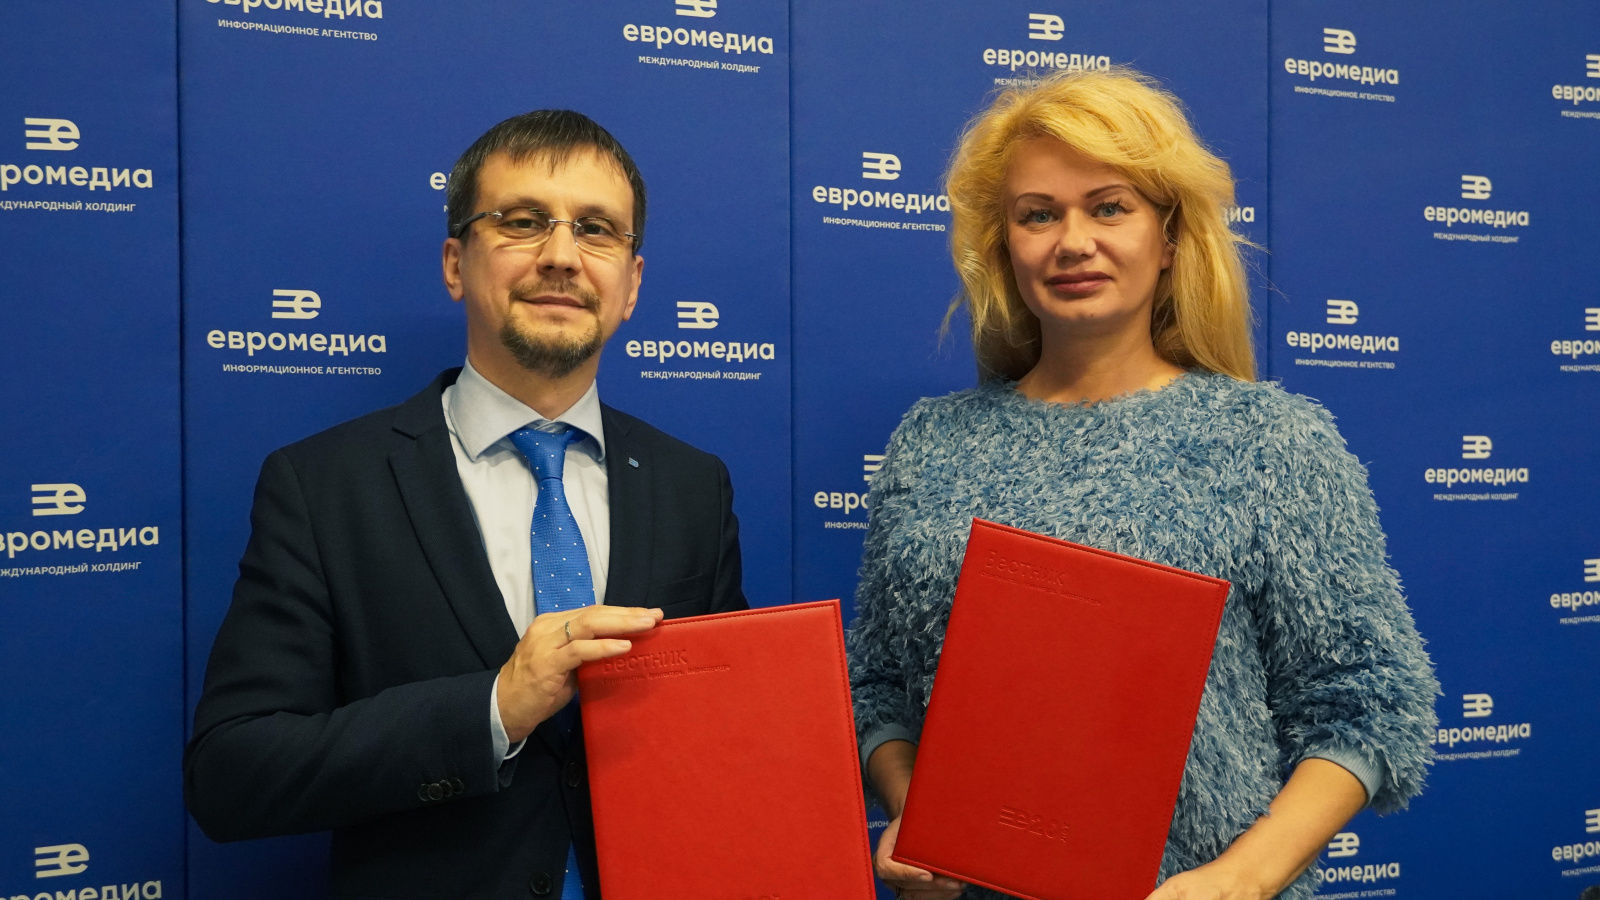 В МИД «ЕвроМедиа» прошла встреча с Еленой Грималовской, в рамках которой подписано соглашение о сотрудничестве. ЕвроМедиа